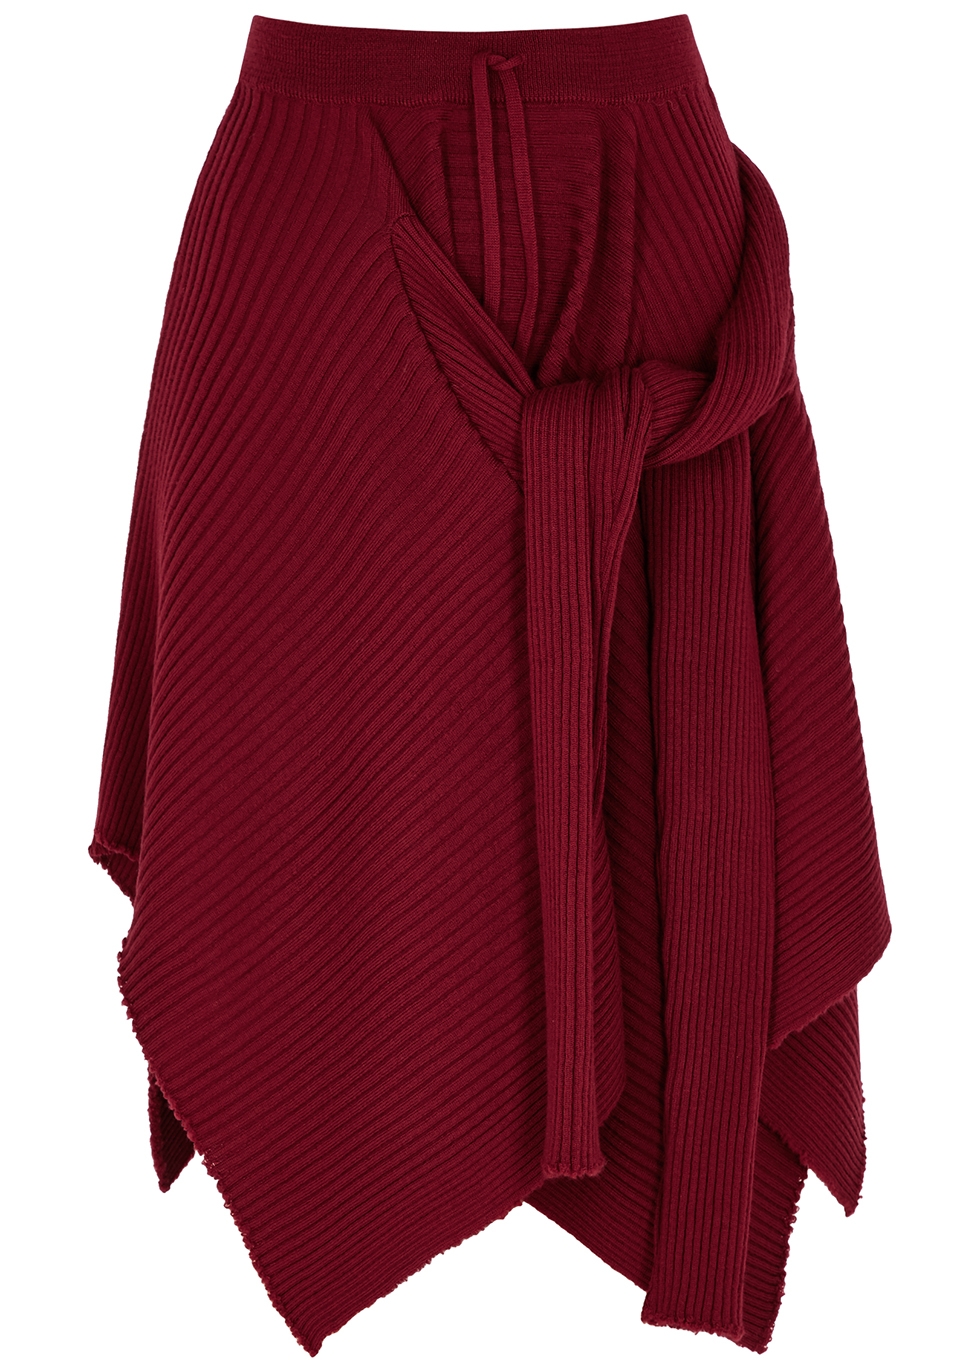 Dark red merino wool skirt